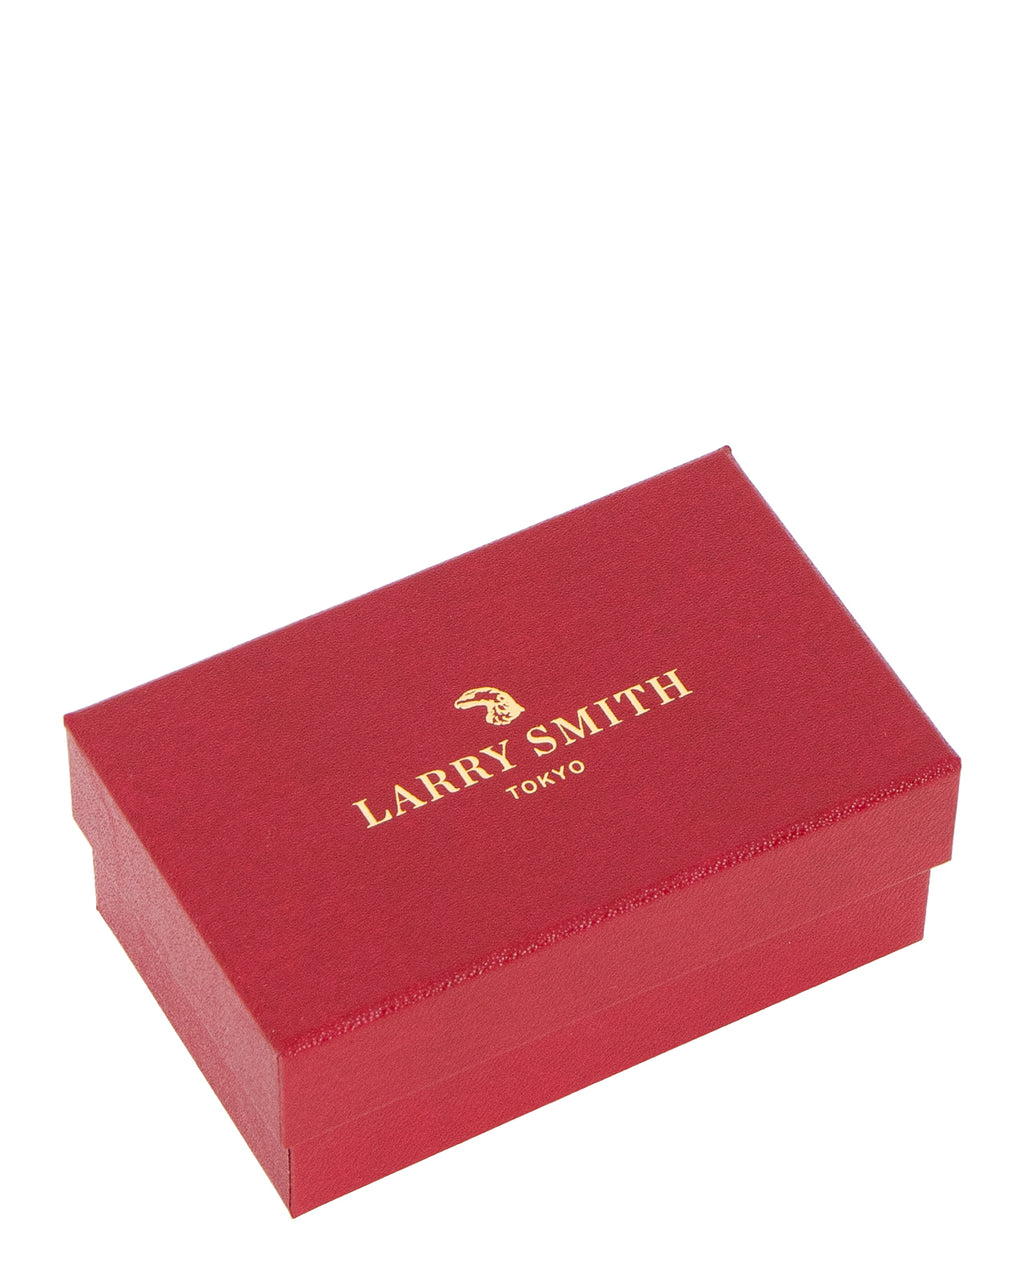 Larry Smith Kazekiri Chain Bracelet